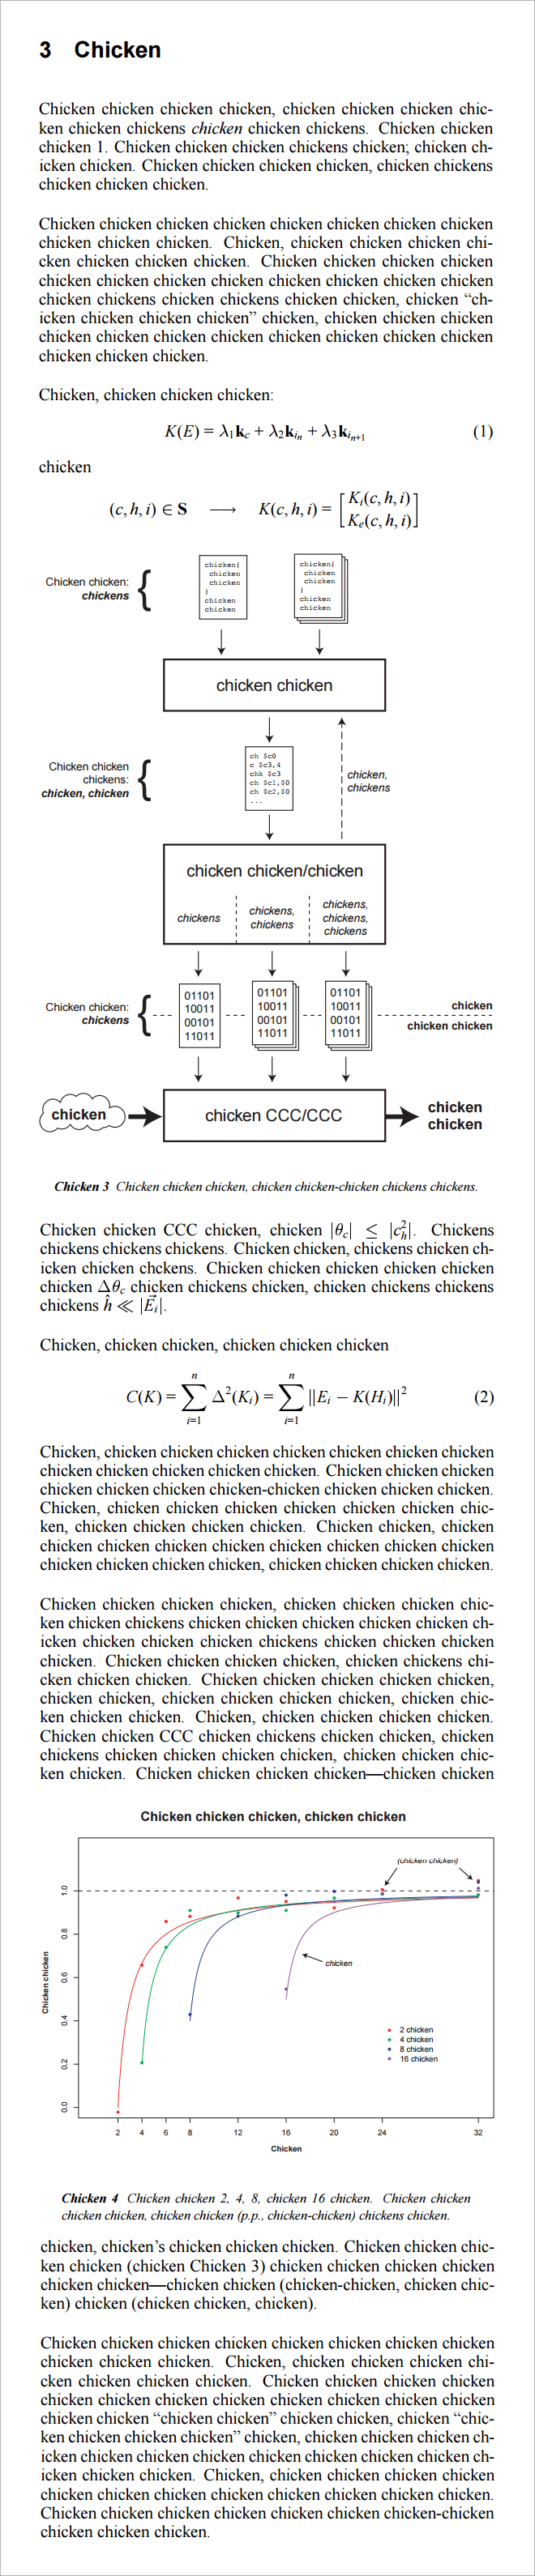 chicken 6